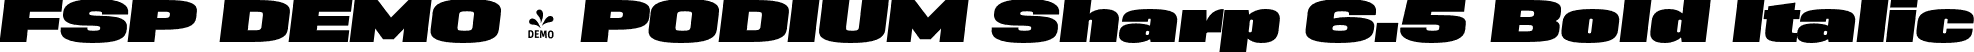 FSP DEMO - PODIUM Sharp 6.5 Bold Italic font - Fontspring-DEMO-podiumsharp-9.13italic.otf